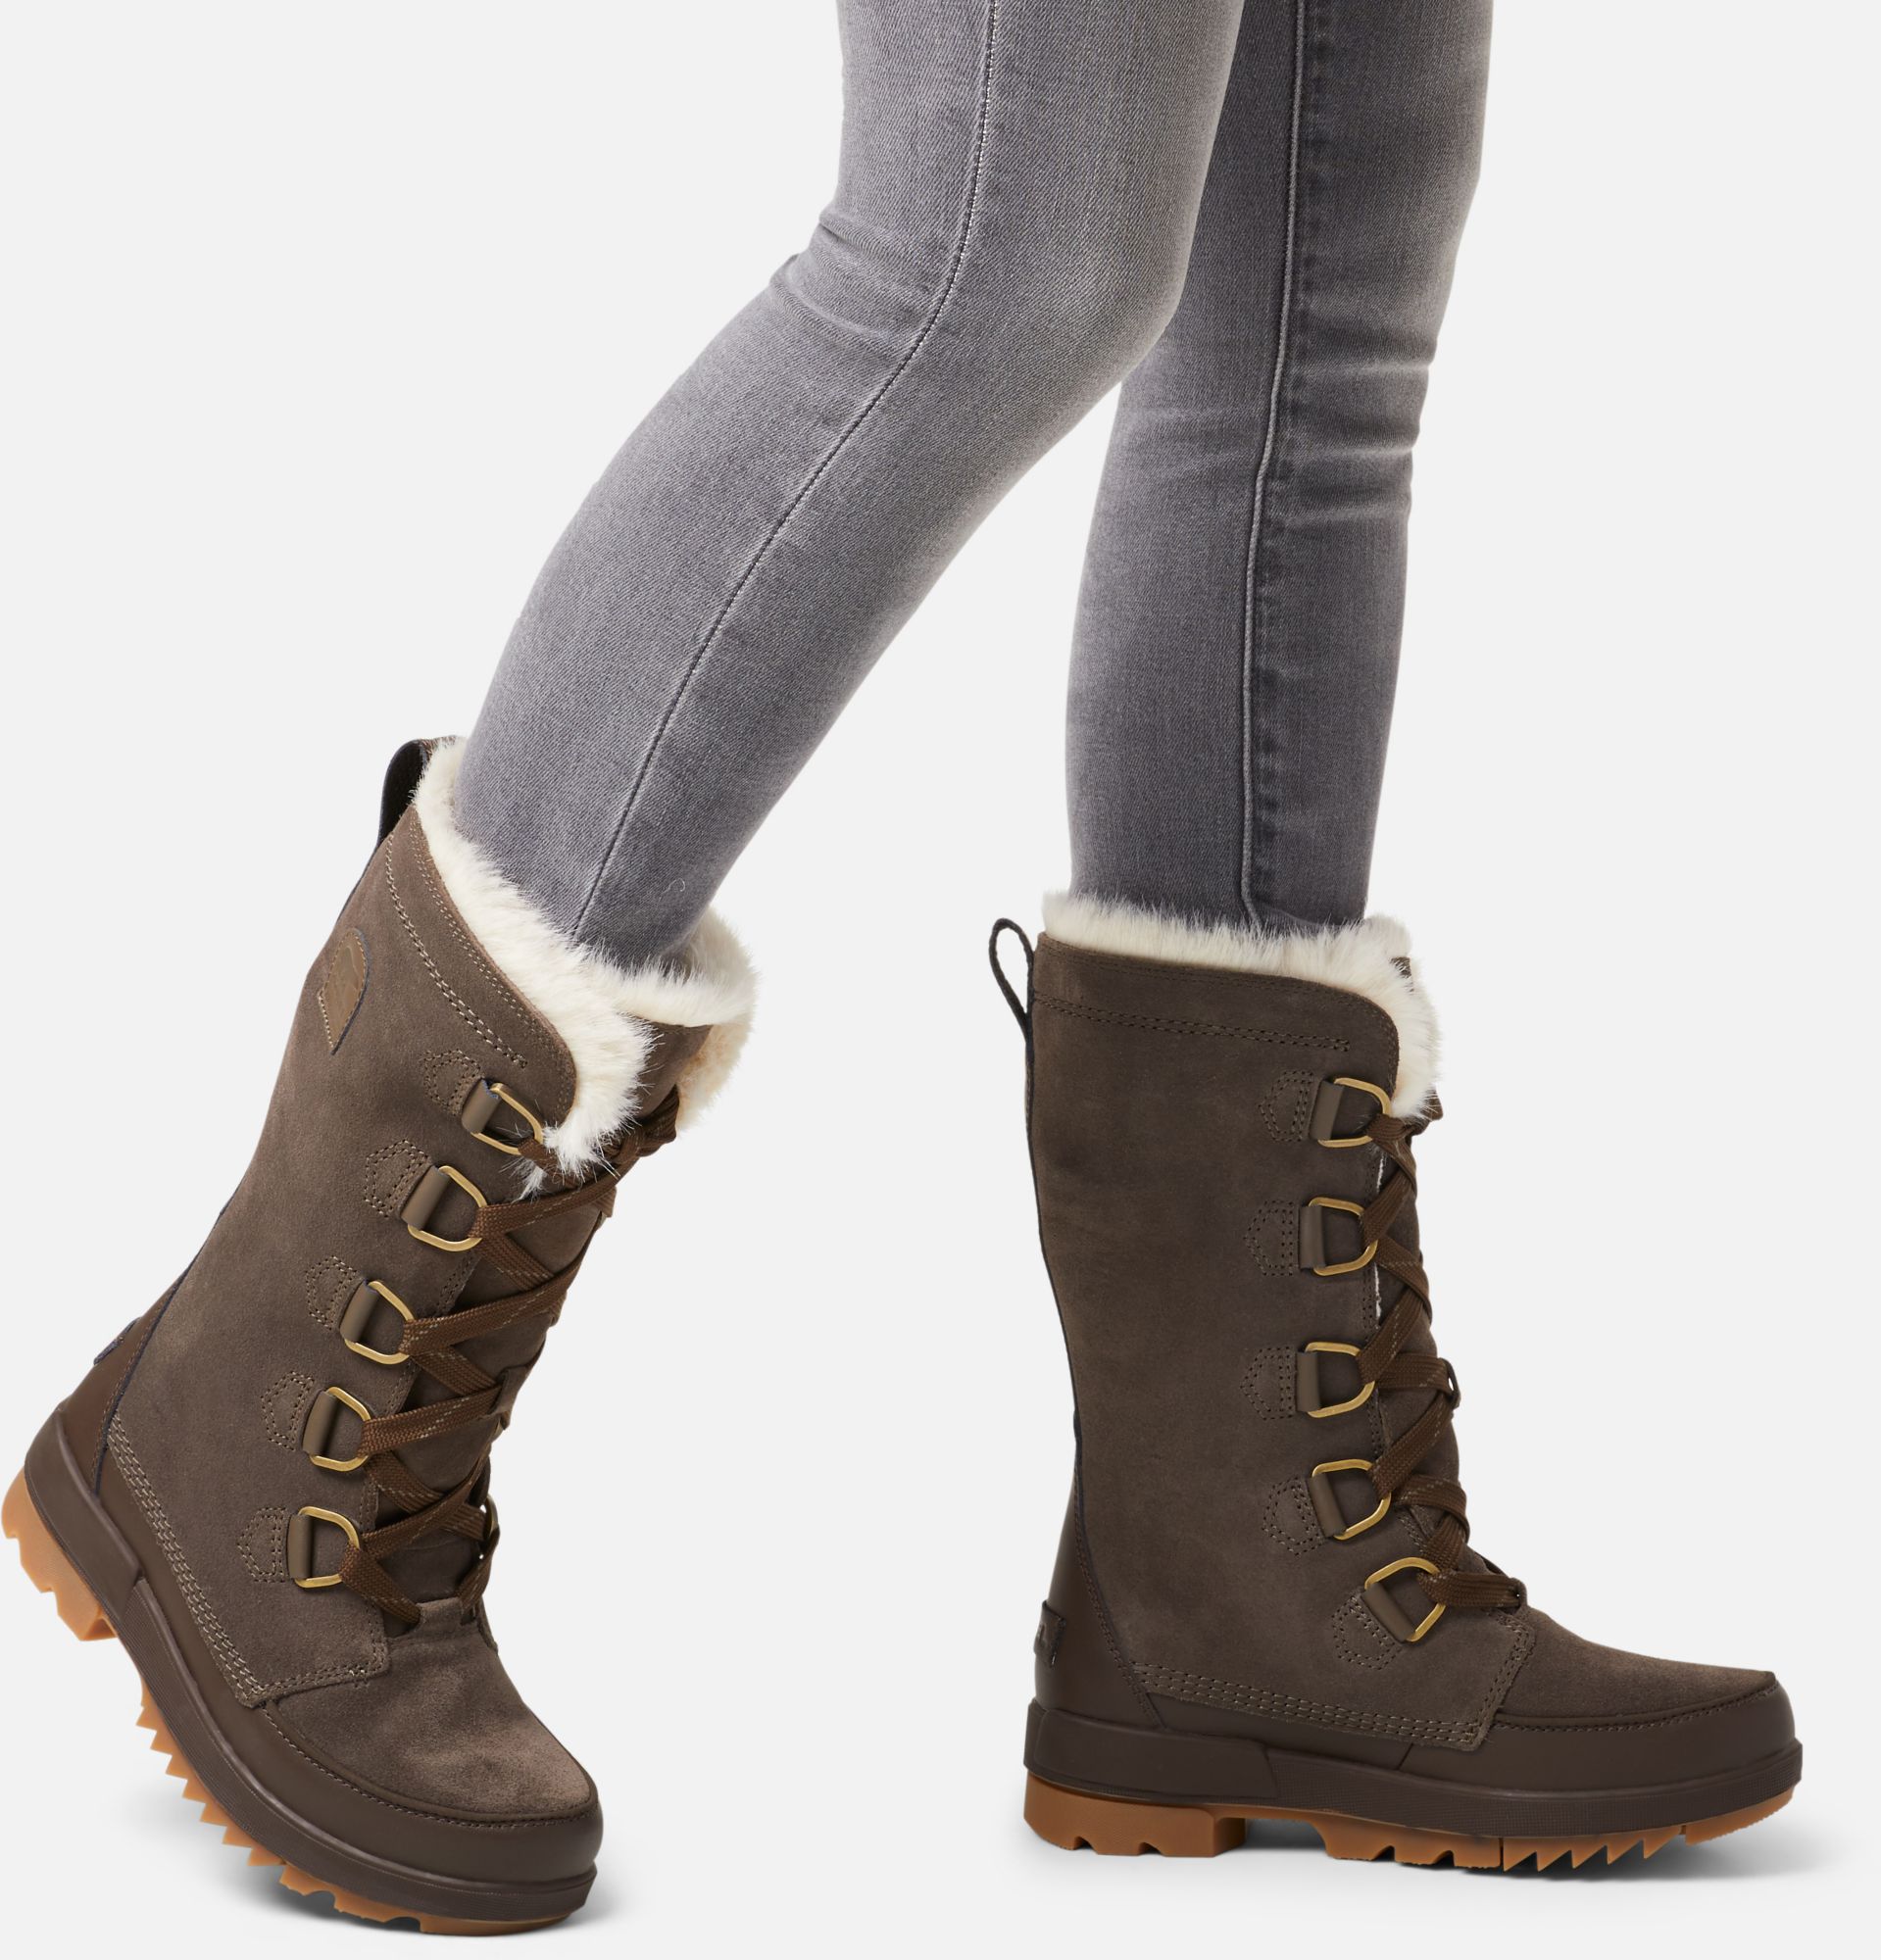 women's tall waterproof winter boots